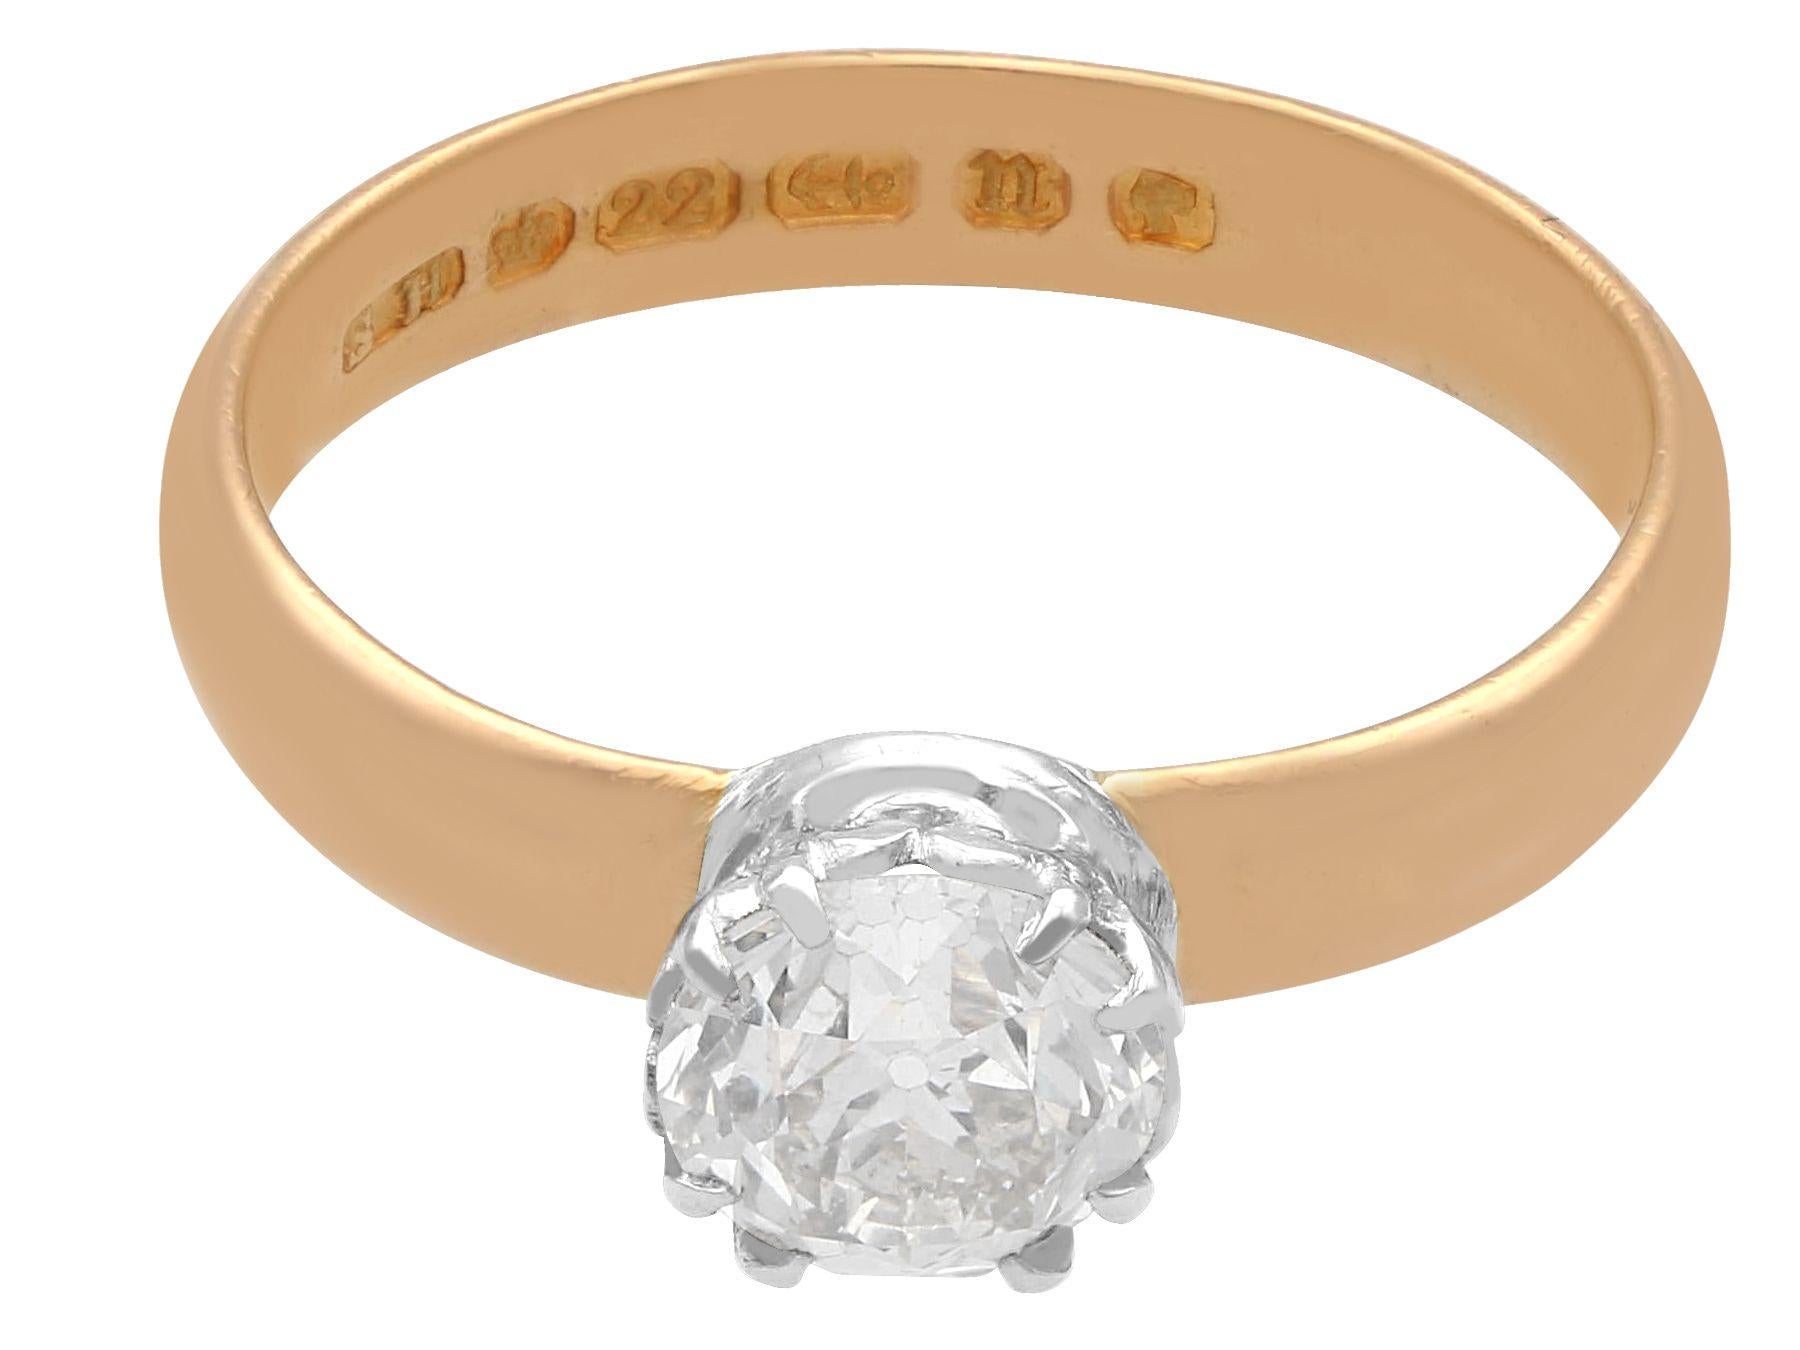 22 carat gold diamond ring price